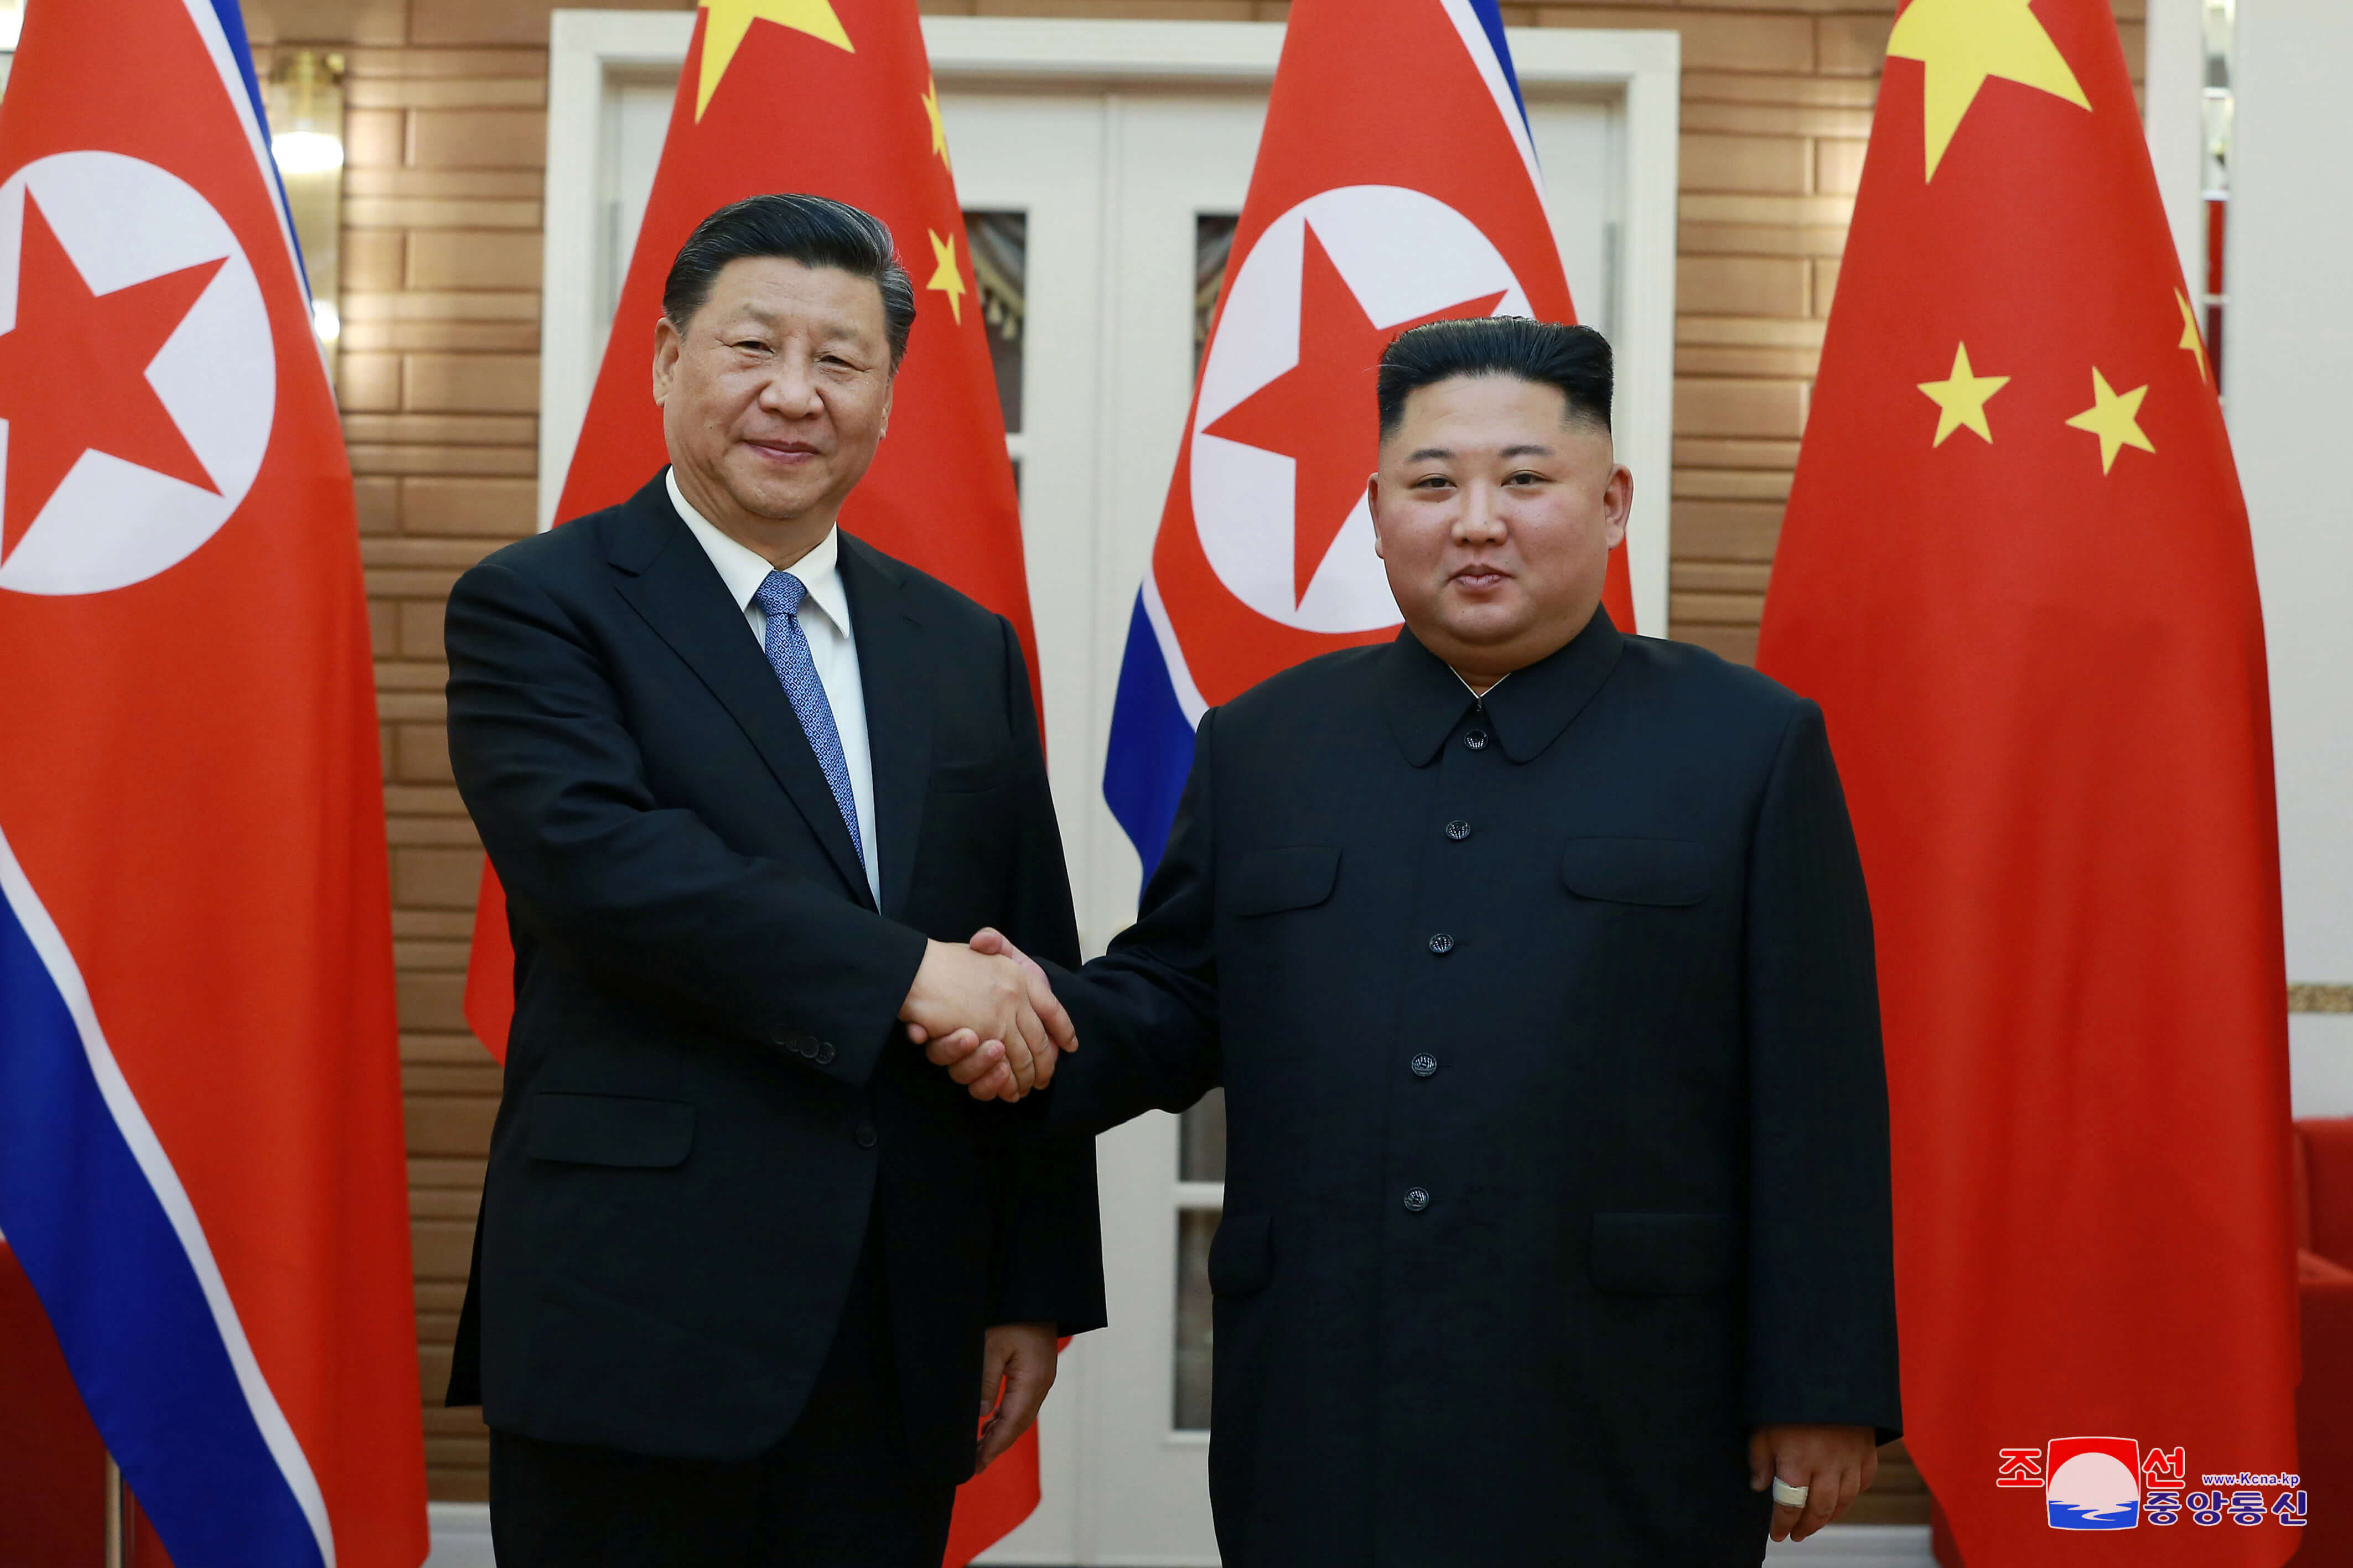 Συνάντηση Σι Τζινπίνγκ – Κιμ Γιονγκ Ουν: Στο επίκεντρο η ειρήνη στην περιοχή [pics]